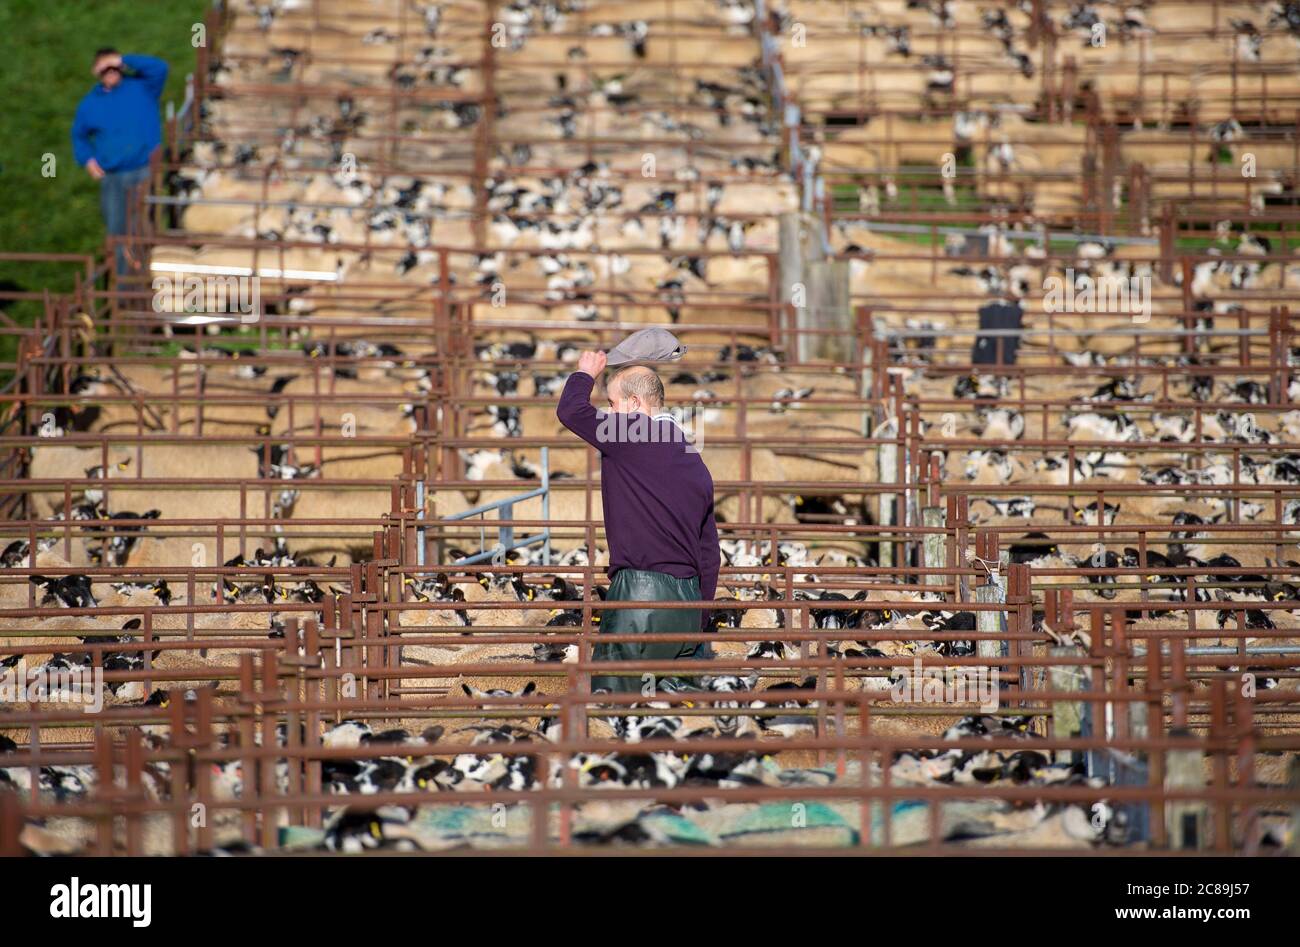 Venta de ovejas de mula, mercado de Subastas de ganado Lazonby, Lazonby, Cumbria. Foto de stock